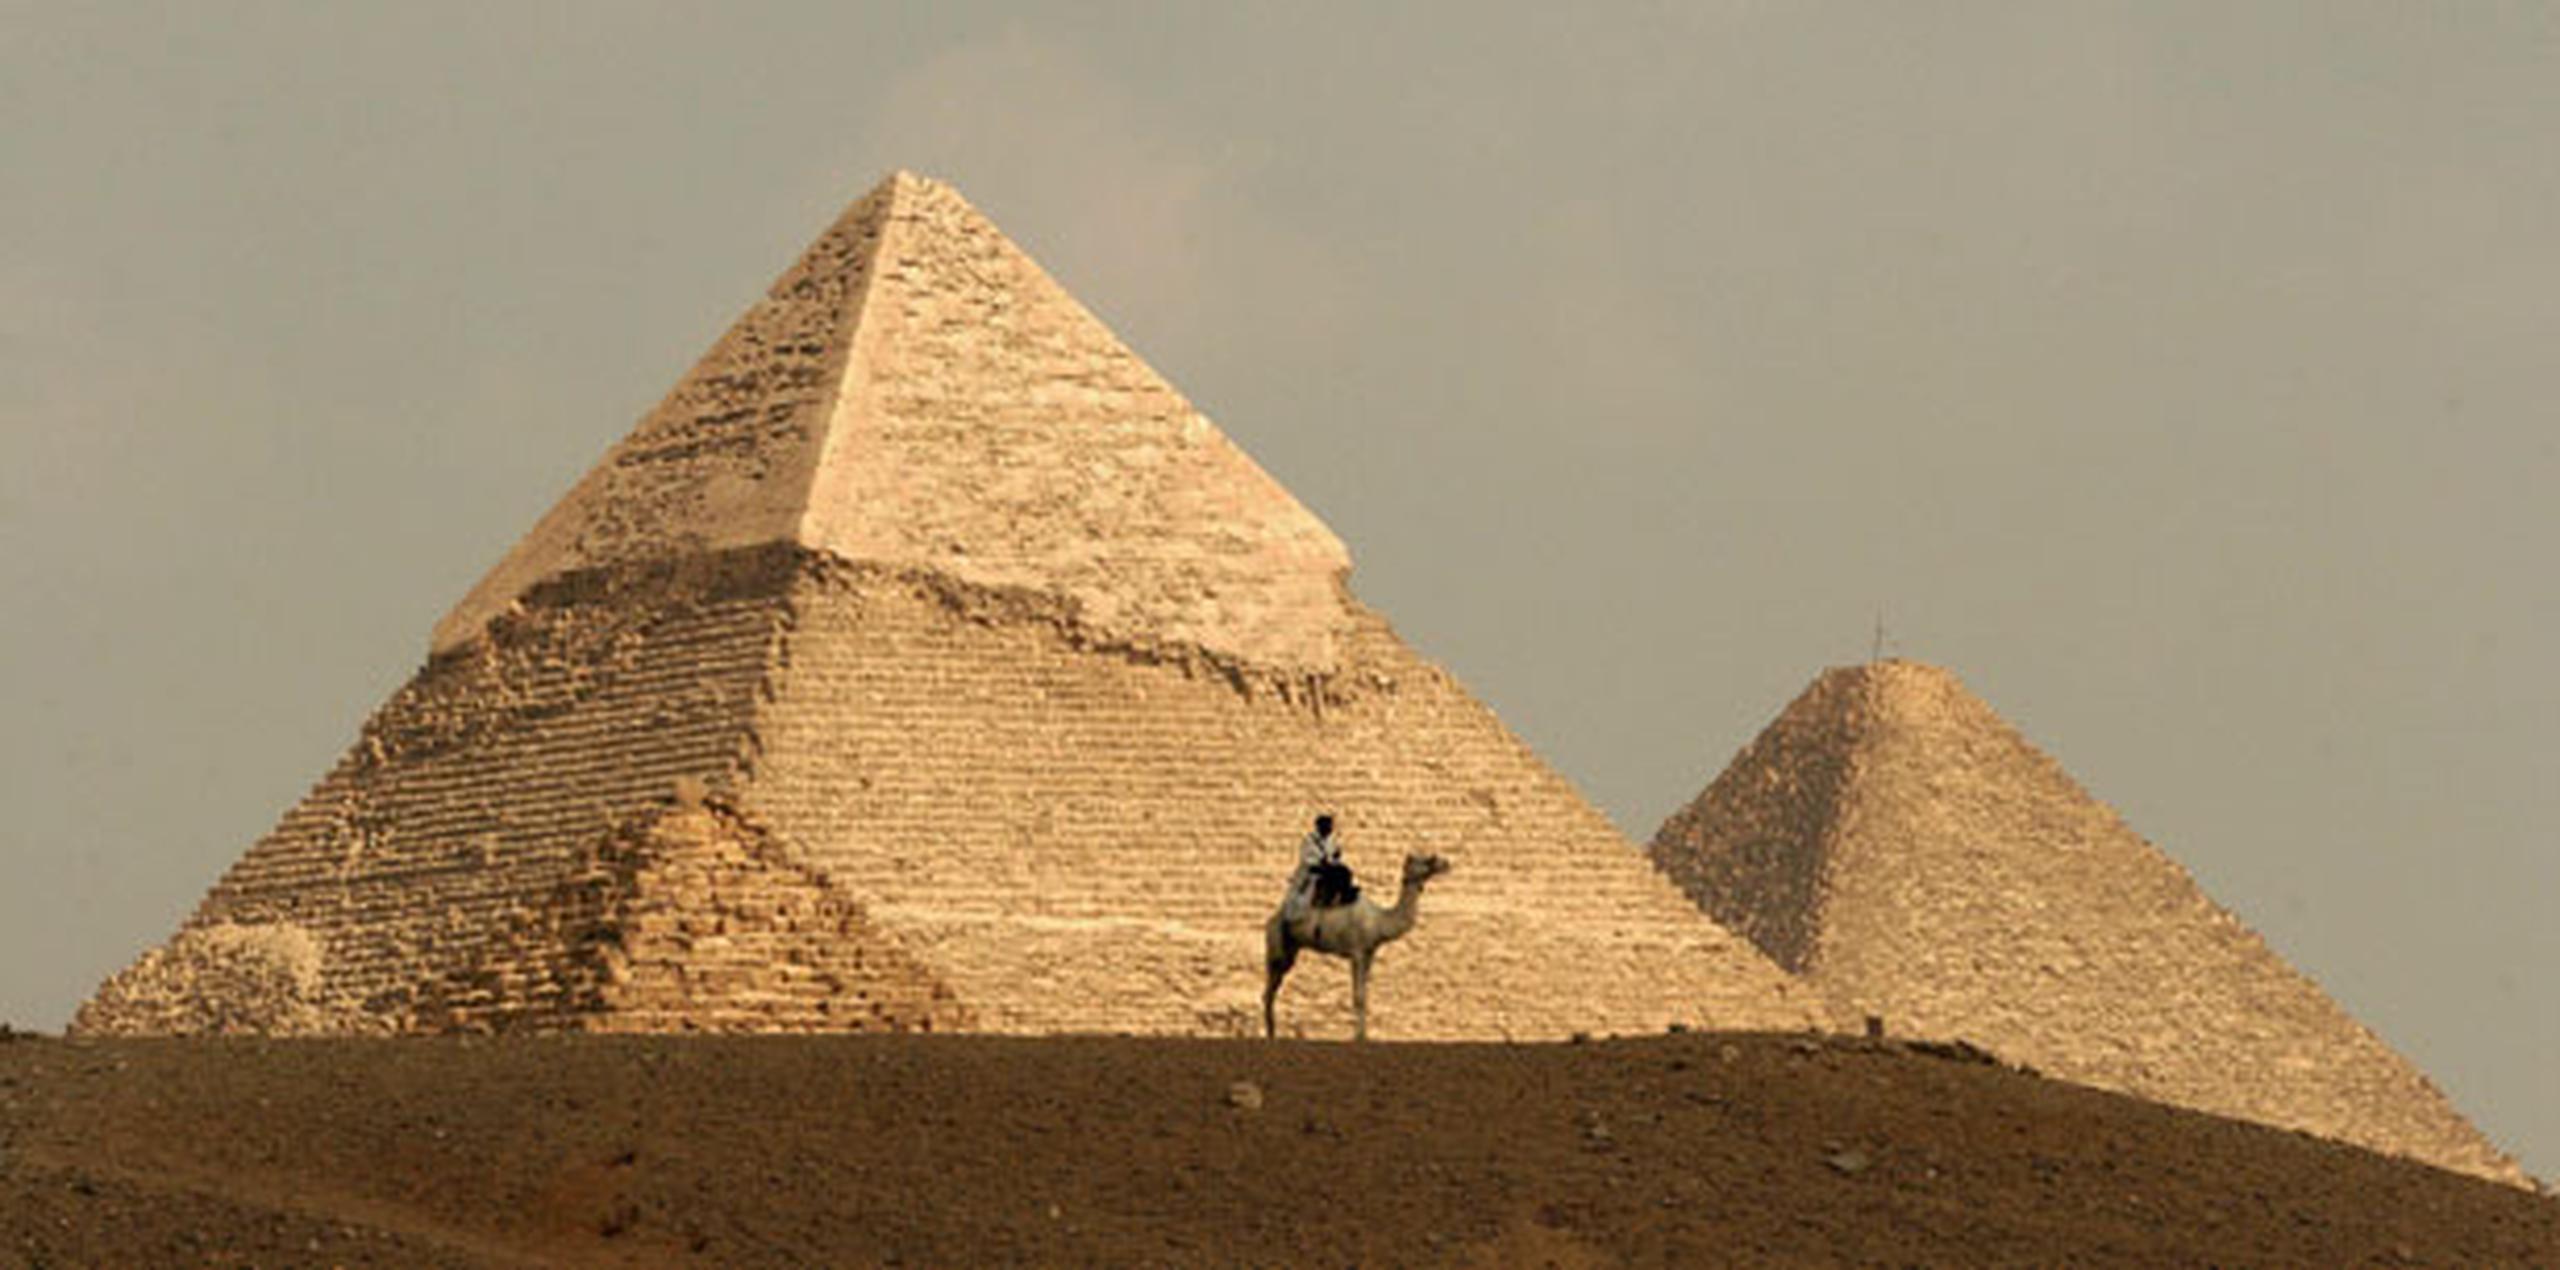 Las pirámides, que fueron usadas como estructuras sagradas de sepultura, fueron construidas en la dinastía faraónica. (Archivo)